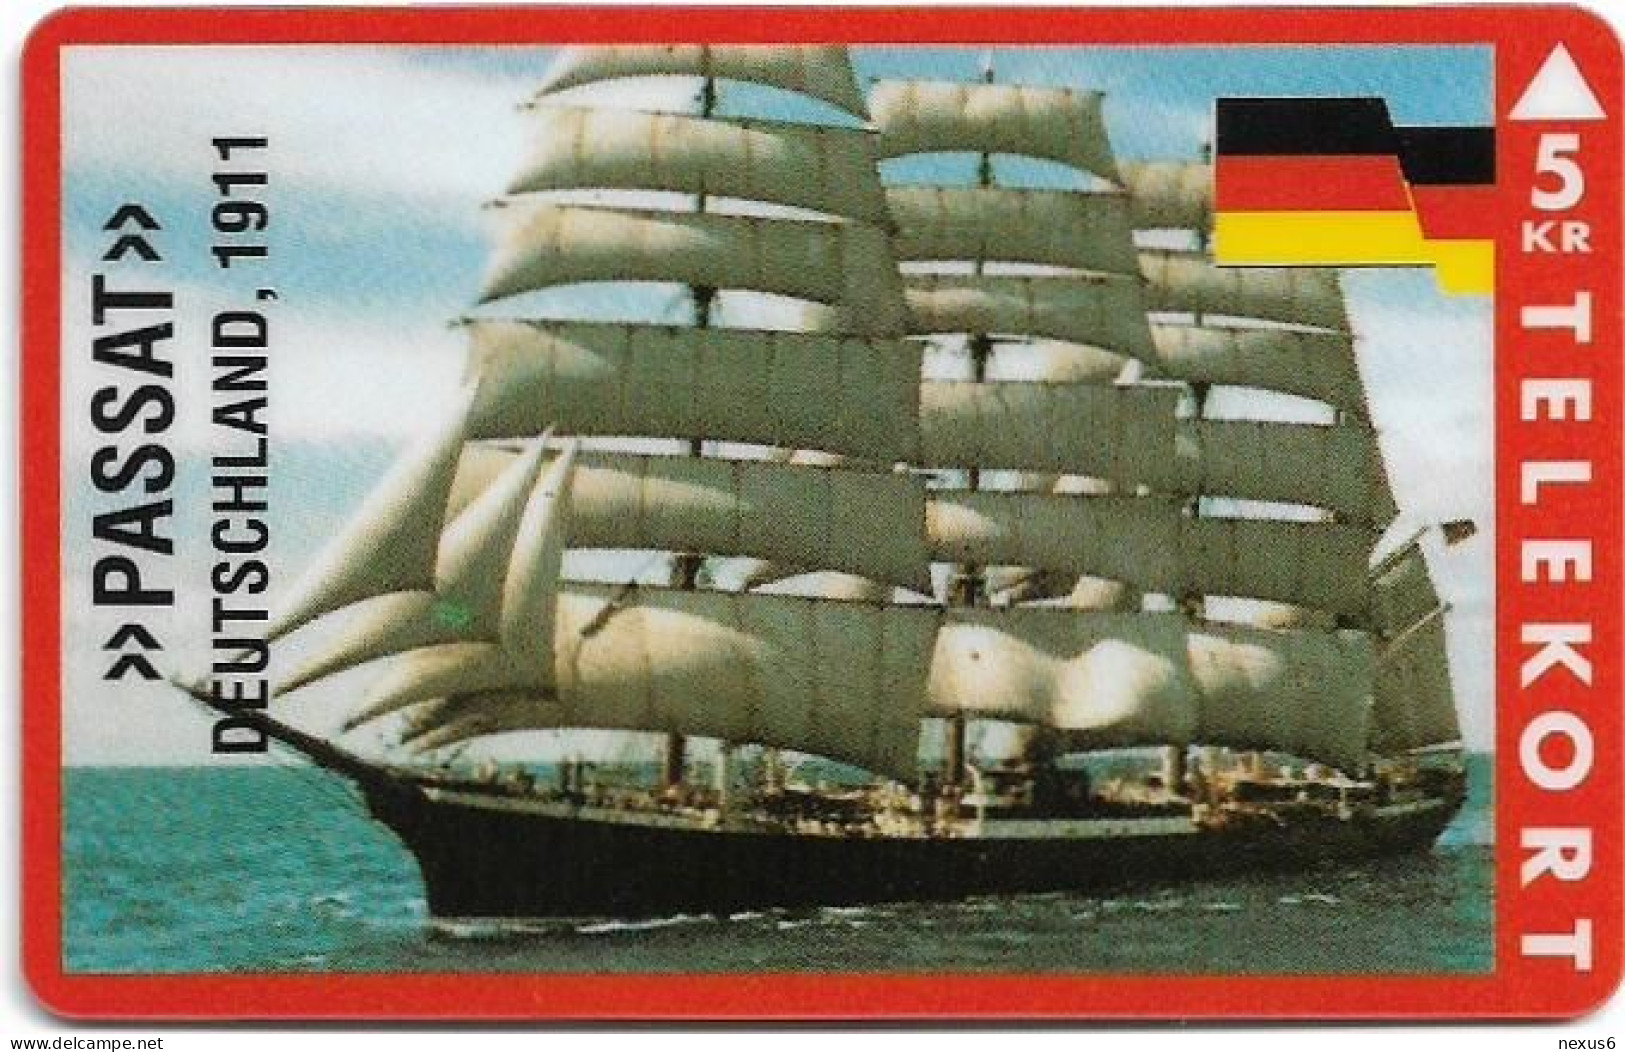 Denmark - KTAS - Ships (Red) - Germany - Passat - TDKP147 - 05.1995, 5kr, 1.500ex, Used - Denmark